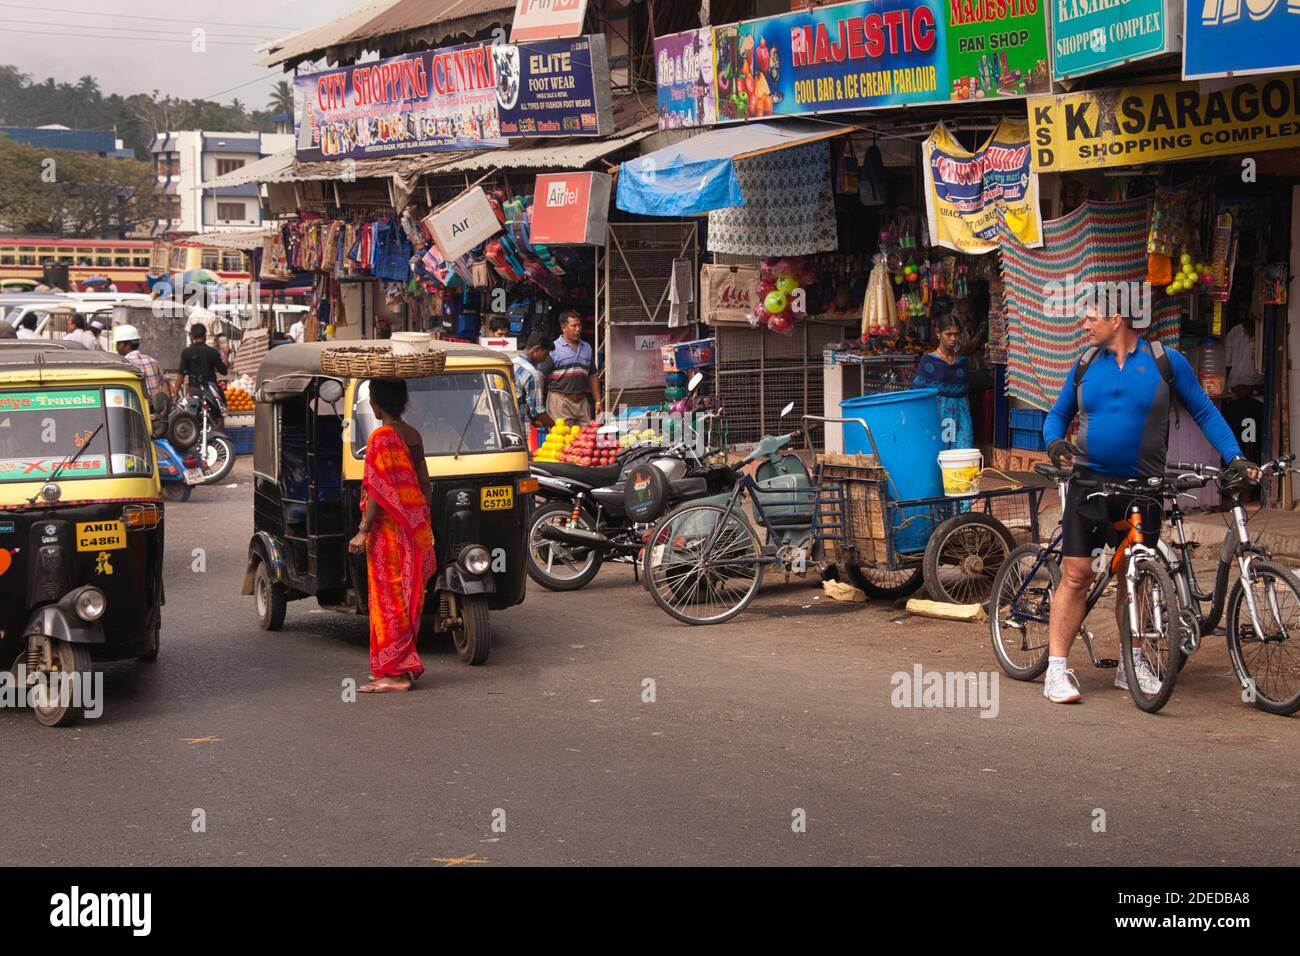 Activité sur la rue principale de Port Blair dans les îles Andaman avec des façades de magasins et des gens passant par, une scène typique de pays du tiers monde Banque D'Images